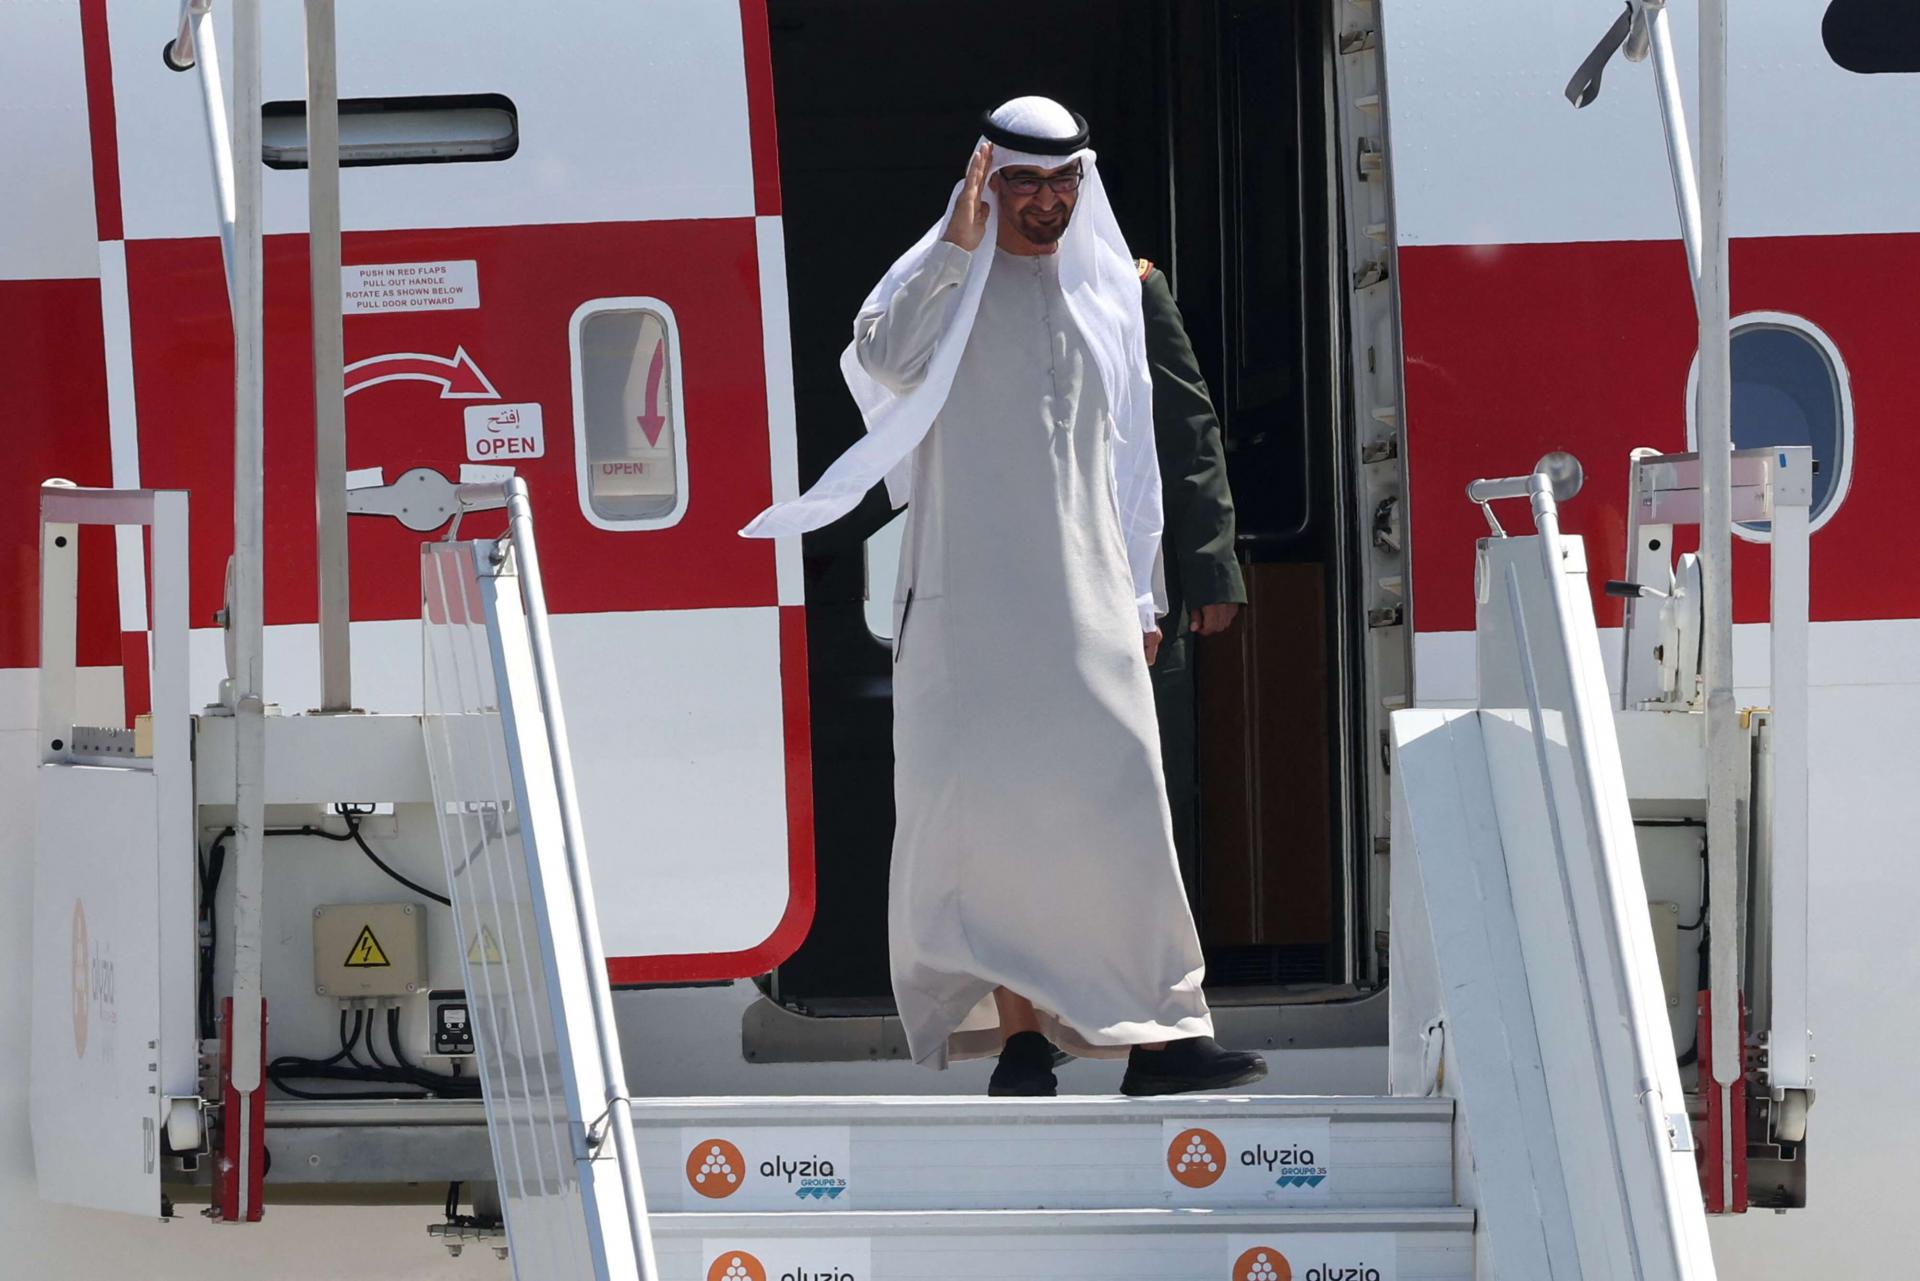 الرئيس الاماراتي يختتم زيارة توّجت تطور العلاقات مع فرنسا